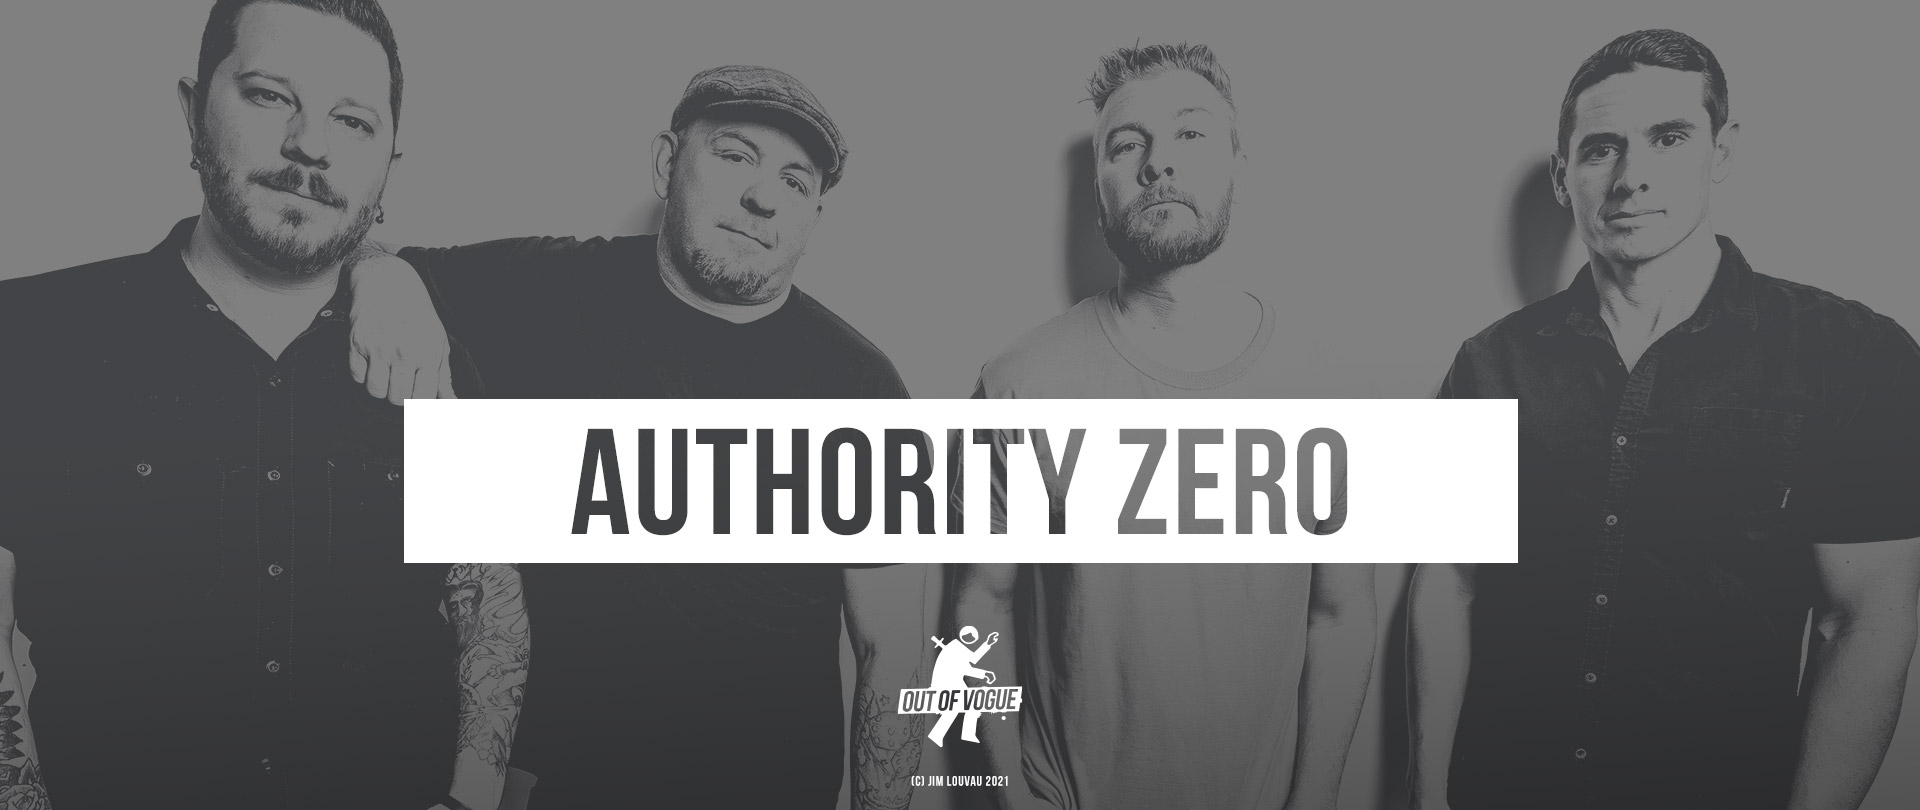 Authority Zero at OUT OF VOGUE SHOP / EN